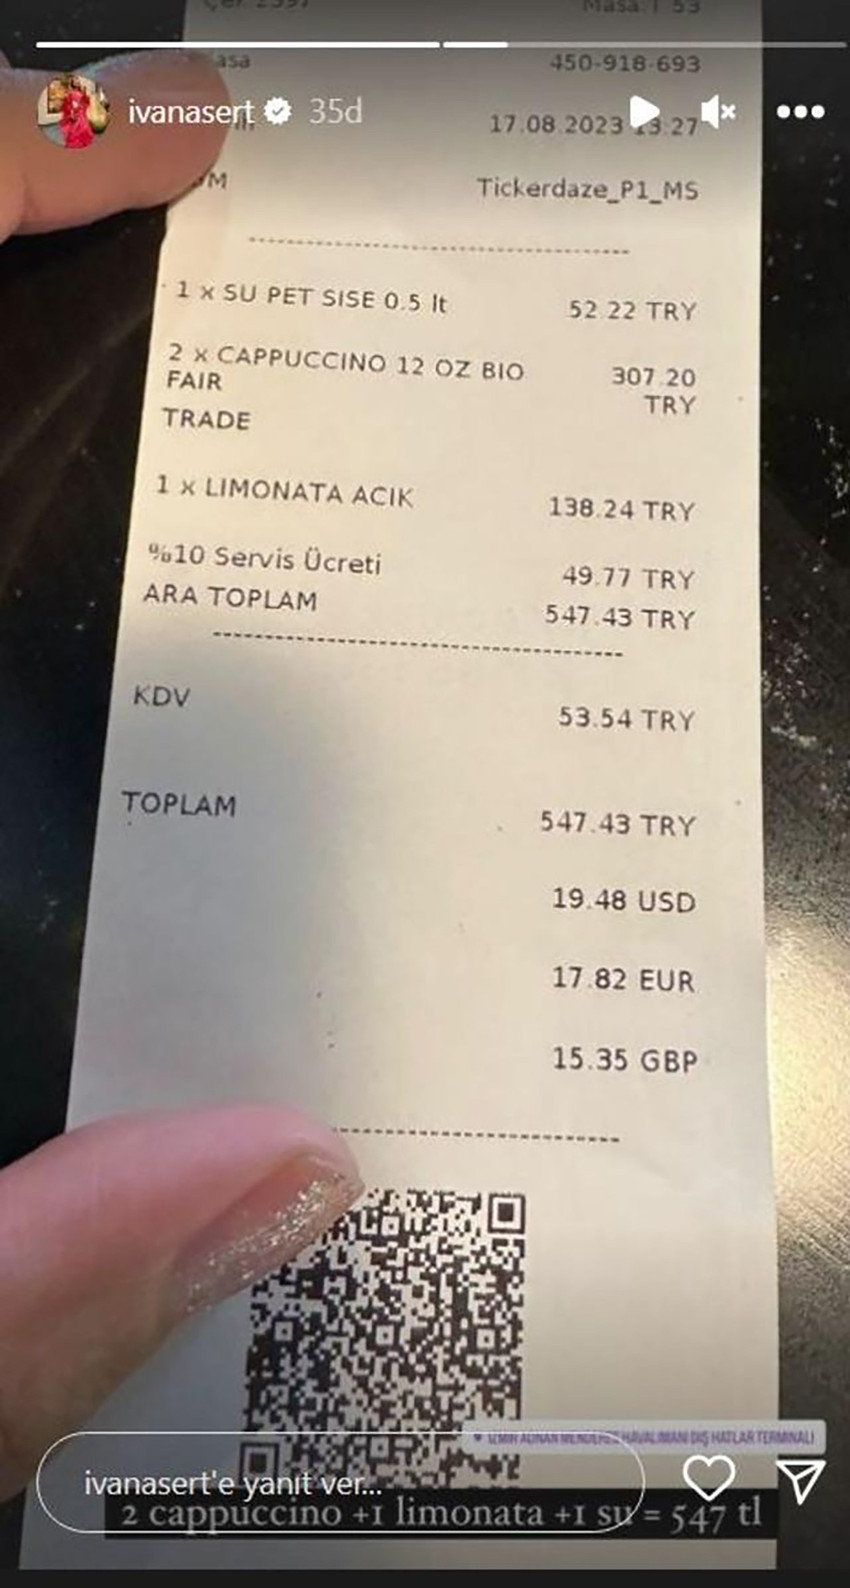 Ivana Sert havaalanından içeceklere ödediği parayı paylaşarak isyan etti - Resim : 1